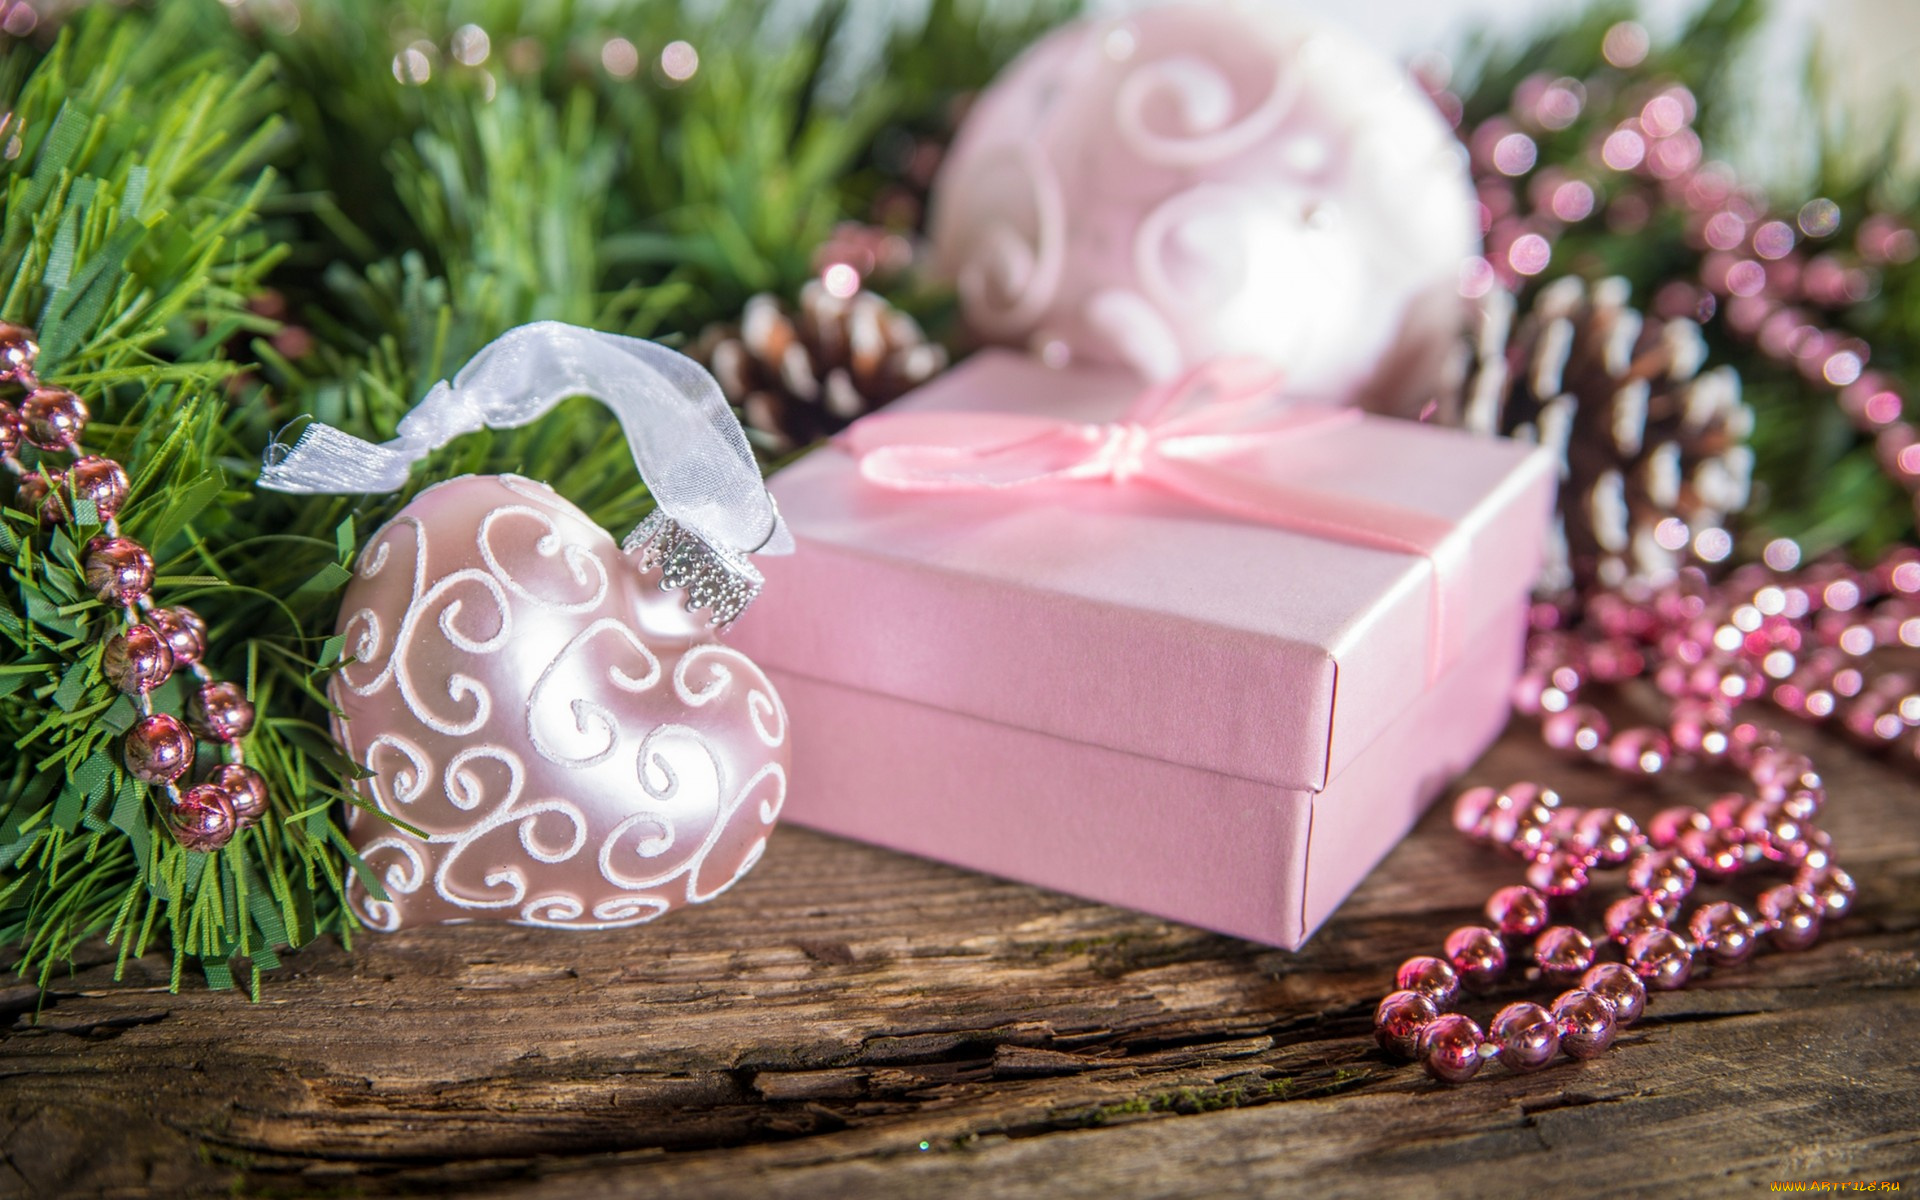 праздничные, подарки, и, коробочки, holiday, heart, box, gift, happy, new, year, merry, christmas, ornaments, winter, snow, decoration, праздник, украшения, зима, снег, с, новым, годом, рождеством, сердце, коробка, подарок